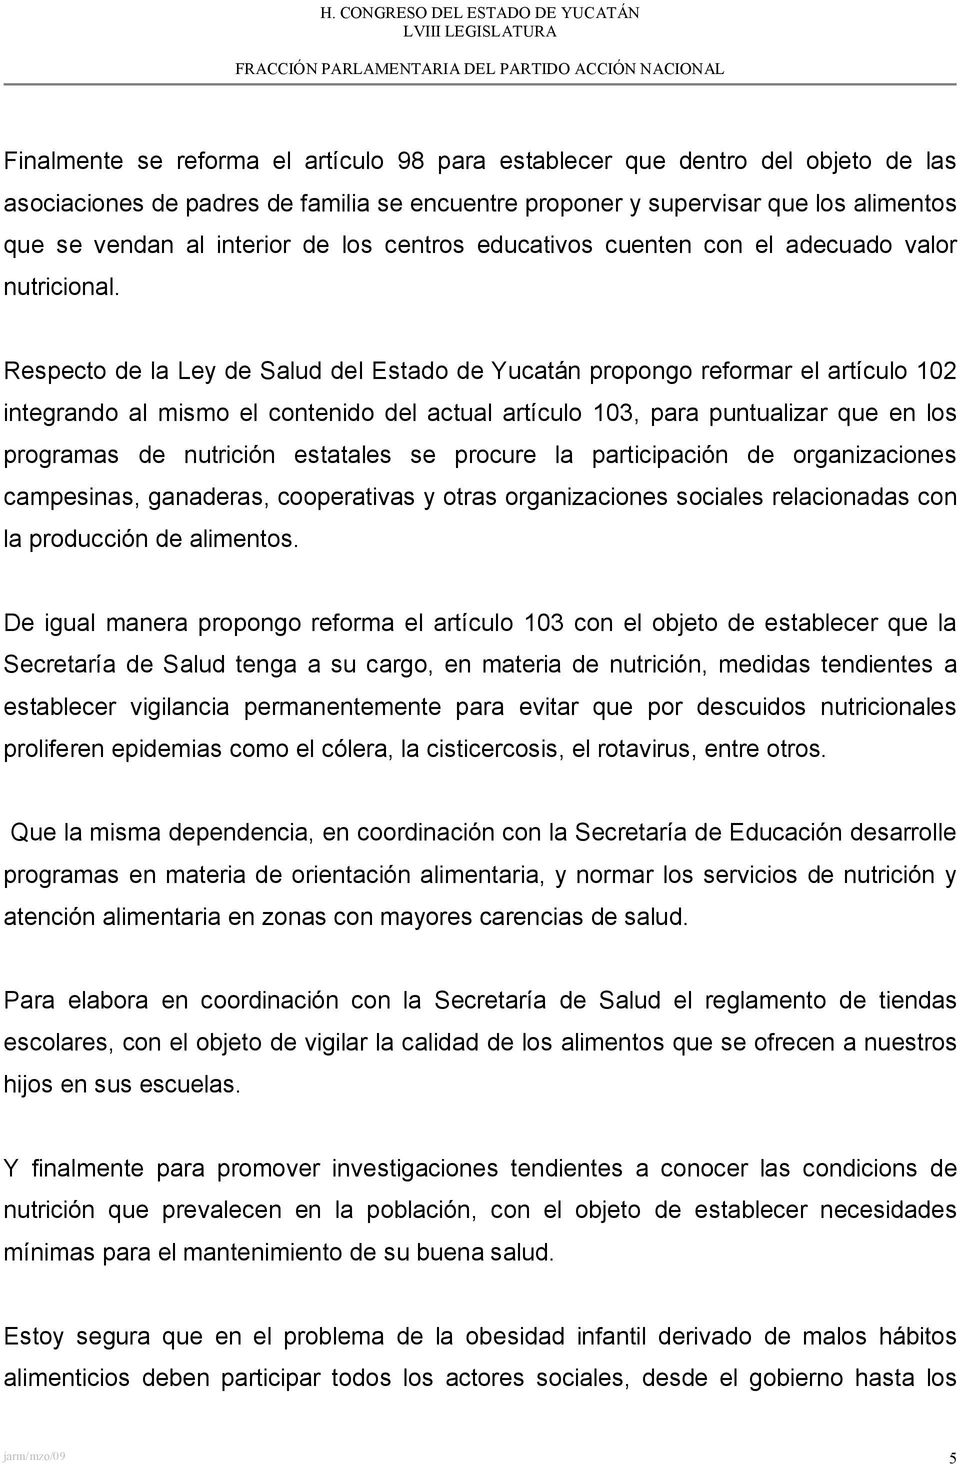 Respecto de la Ley de Salud del Estado de Yucatán propongo reformar el artículo 102 integrando al mismo el contenido del actual artículo 103, para puntualizar que en los programas de nutrición